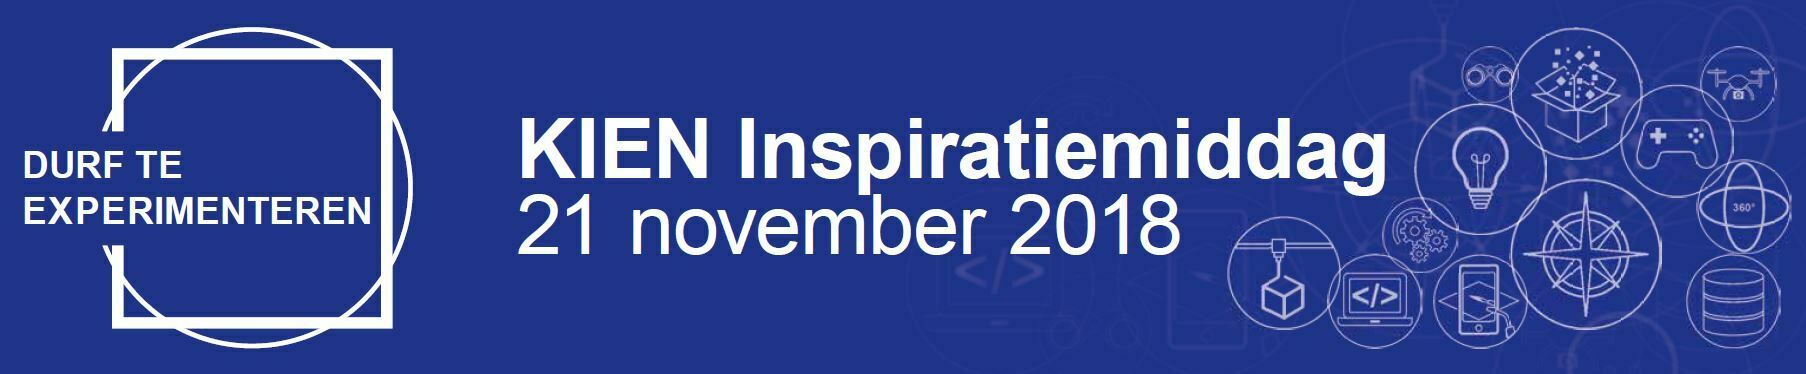 KIEN inspiratiemiddag 21 november